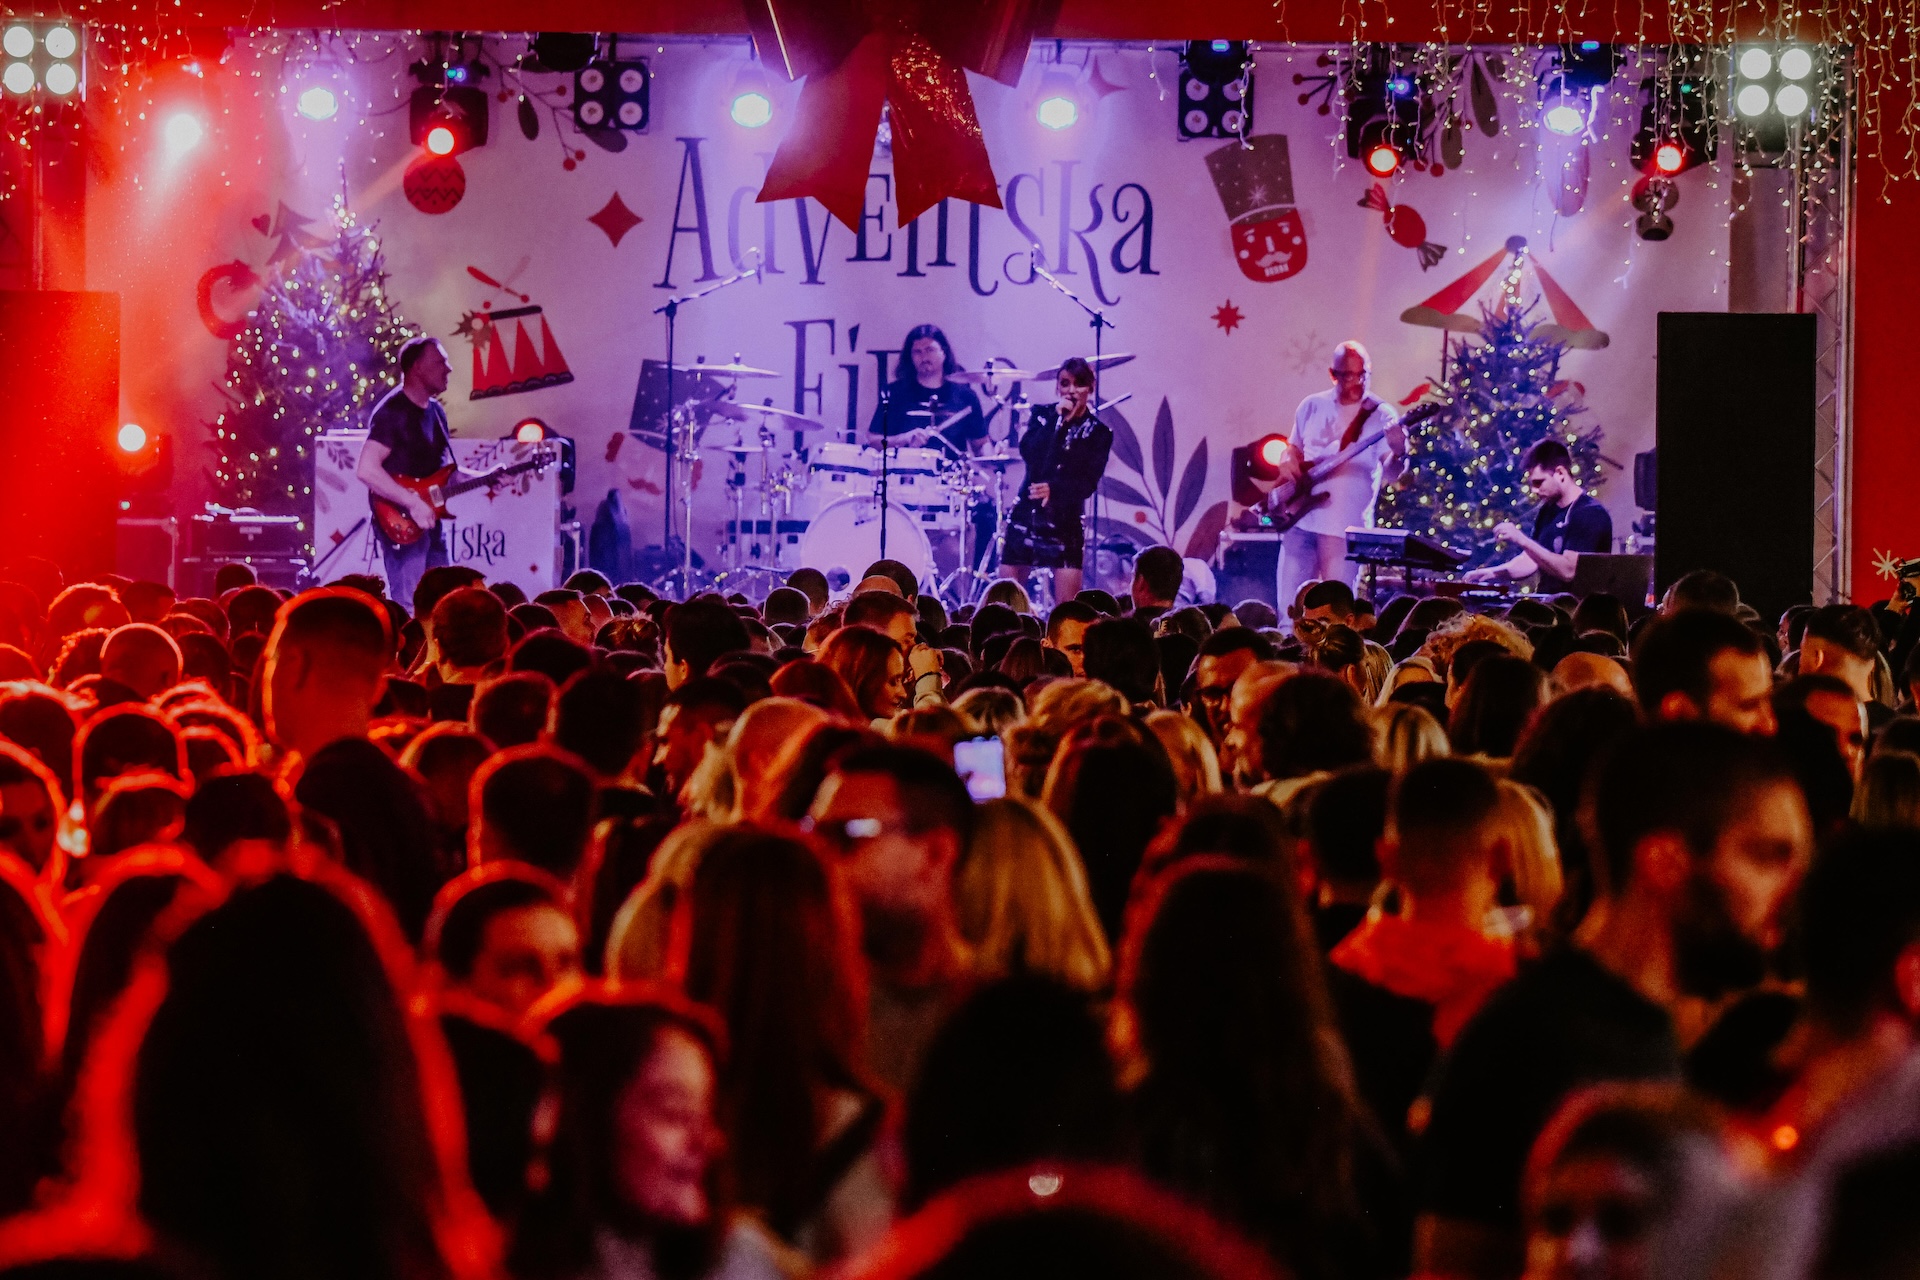 Ova slika prikazuje koncertnu atmosferu tijekom božićnog razdoblja. Na pozornici je bend koji svira, okružen božićnim dekoracijama i osvjetljenjem. Publika je u prvom planu. Pozadina pozornice sadrži veliki tekst i razne simbole vezane uz blagdane. Rasvjeta je živahna i doprinosi svečanom ozračju događaja.